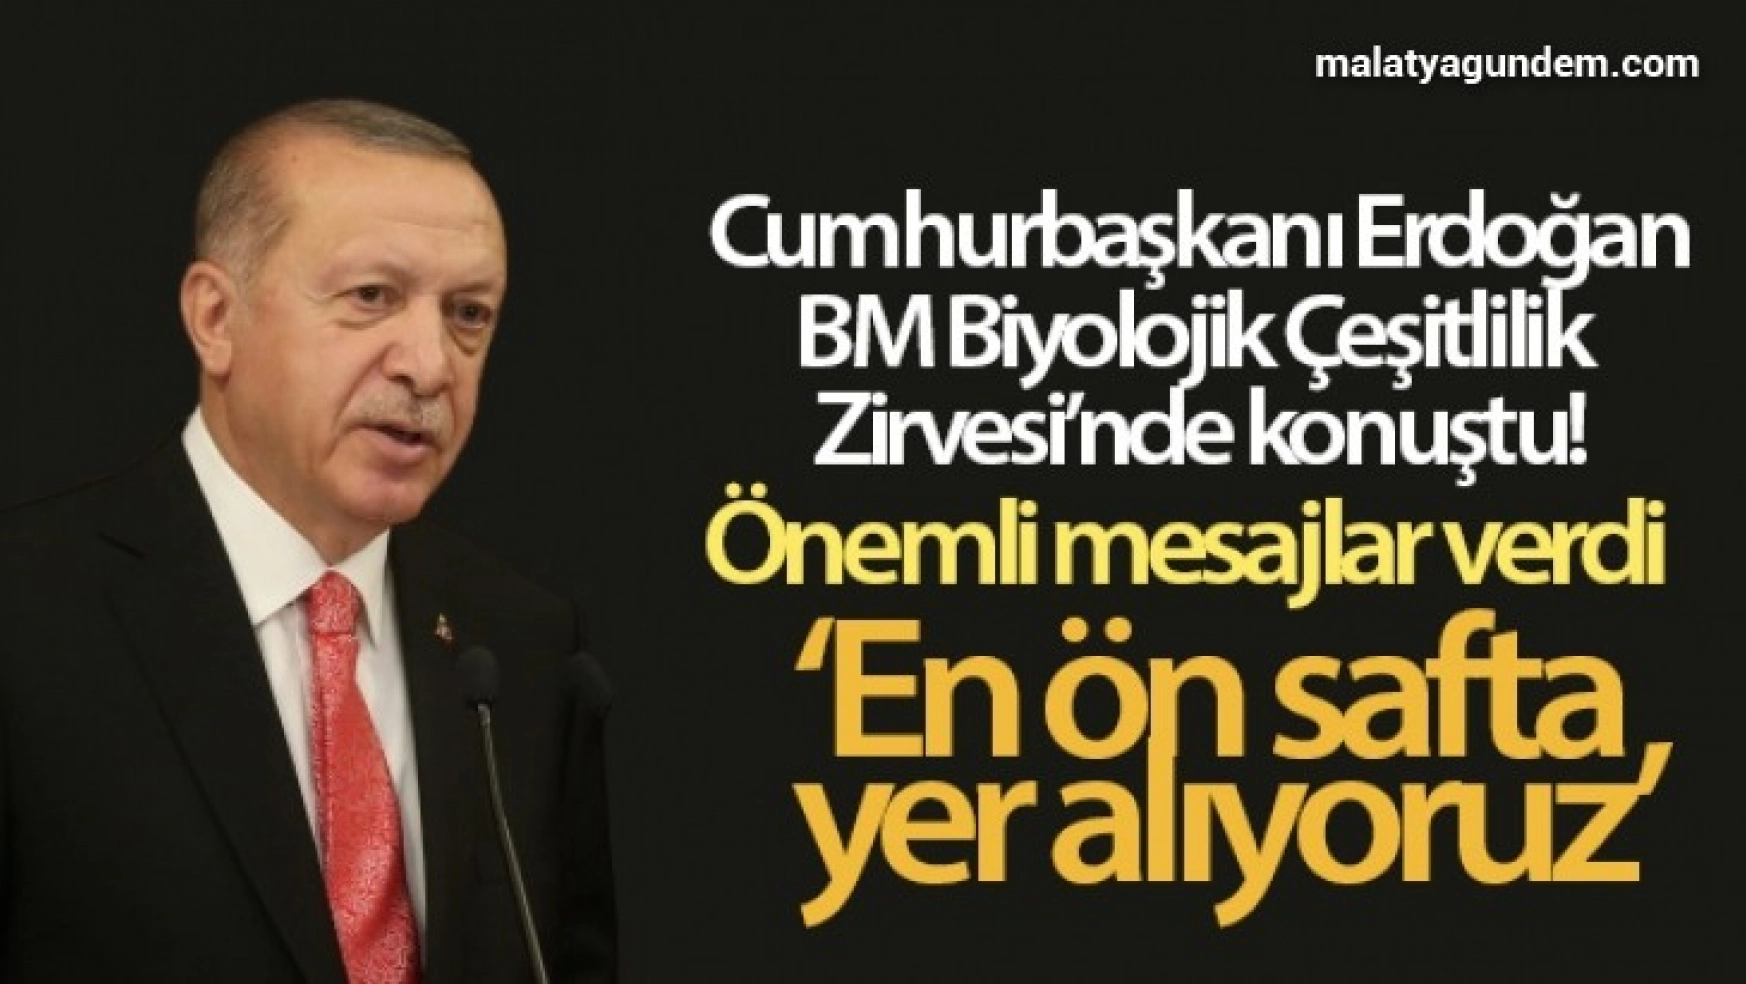 Cumhurbaşkanı Erdoğan, BM Biyolojik Çeşitlilik Zirvesi'nde konuştu